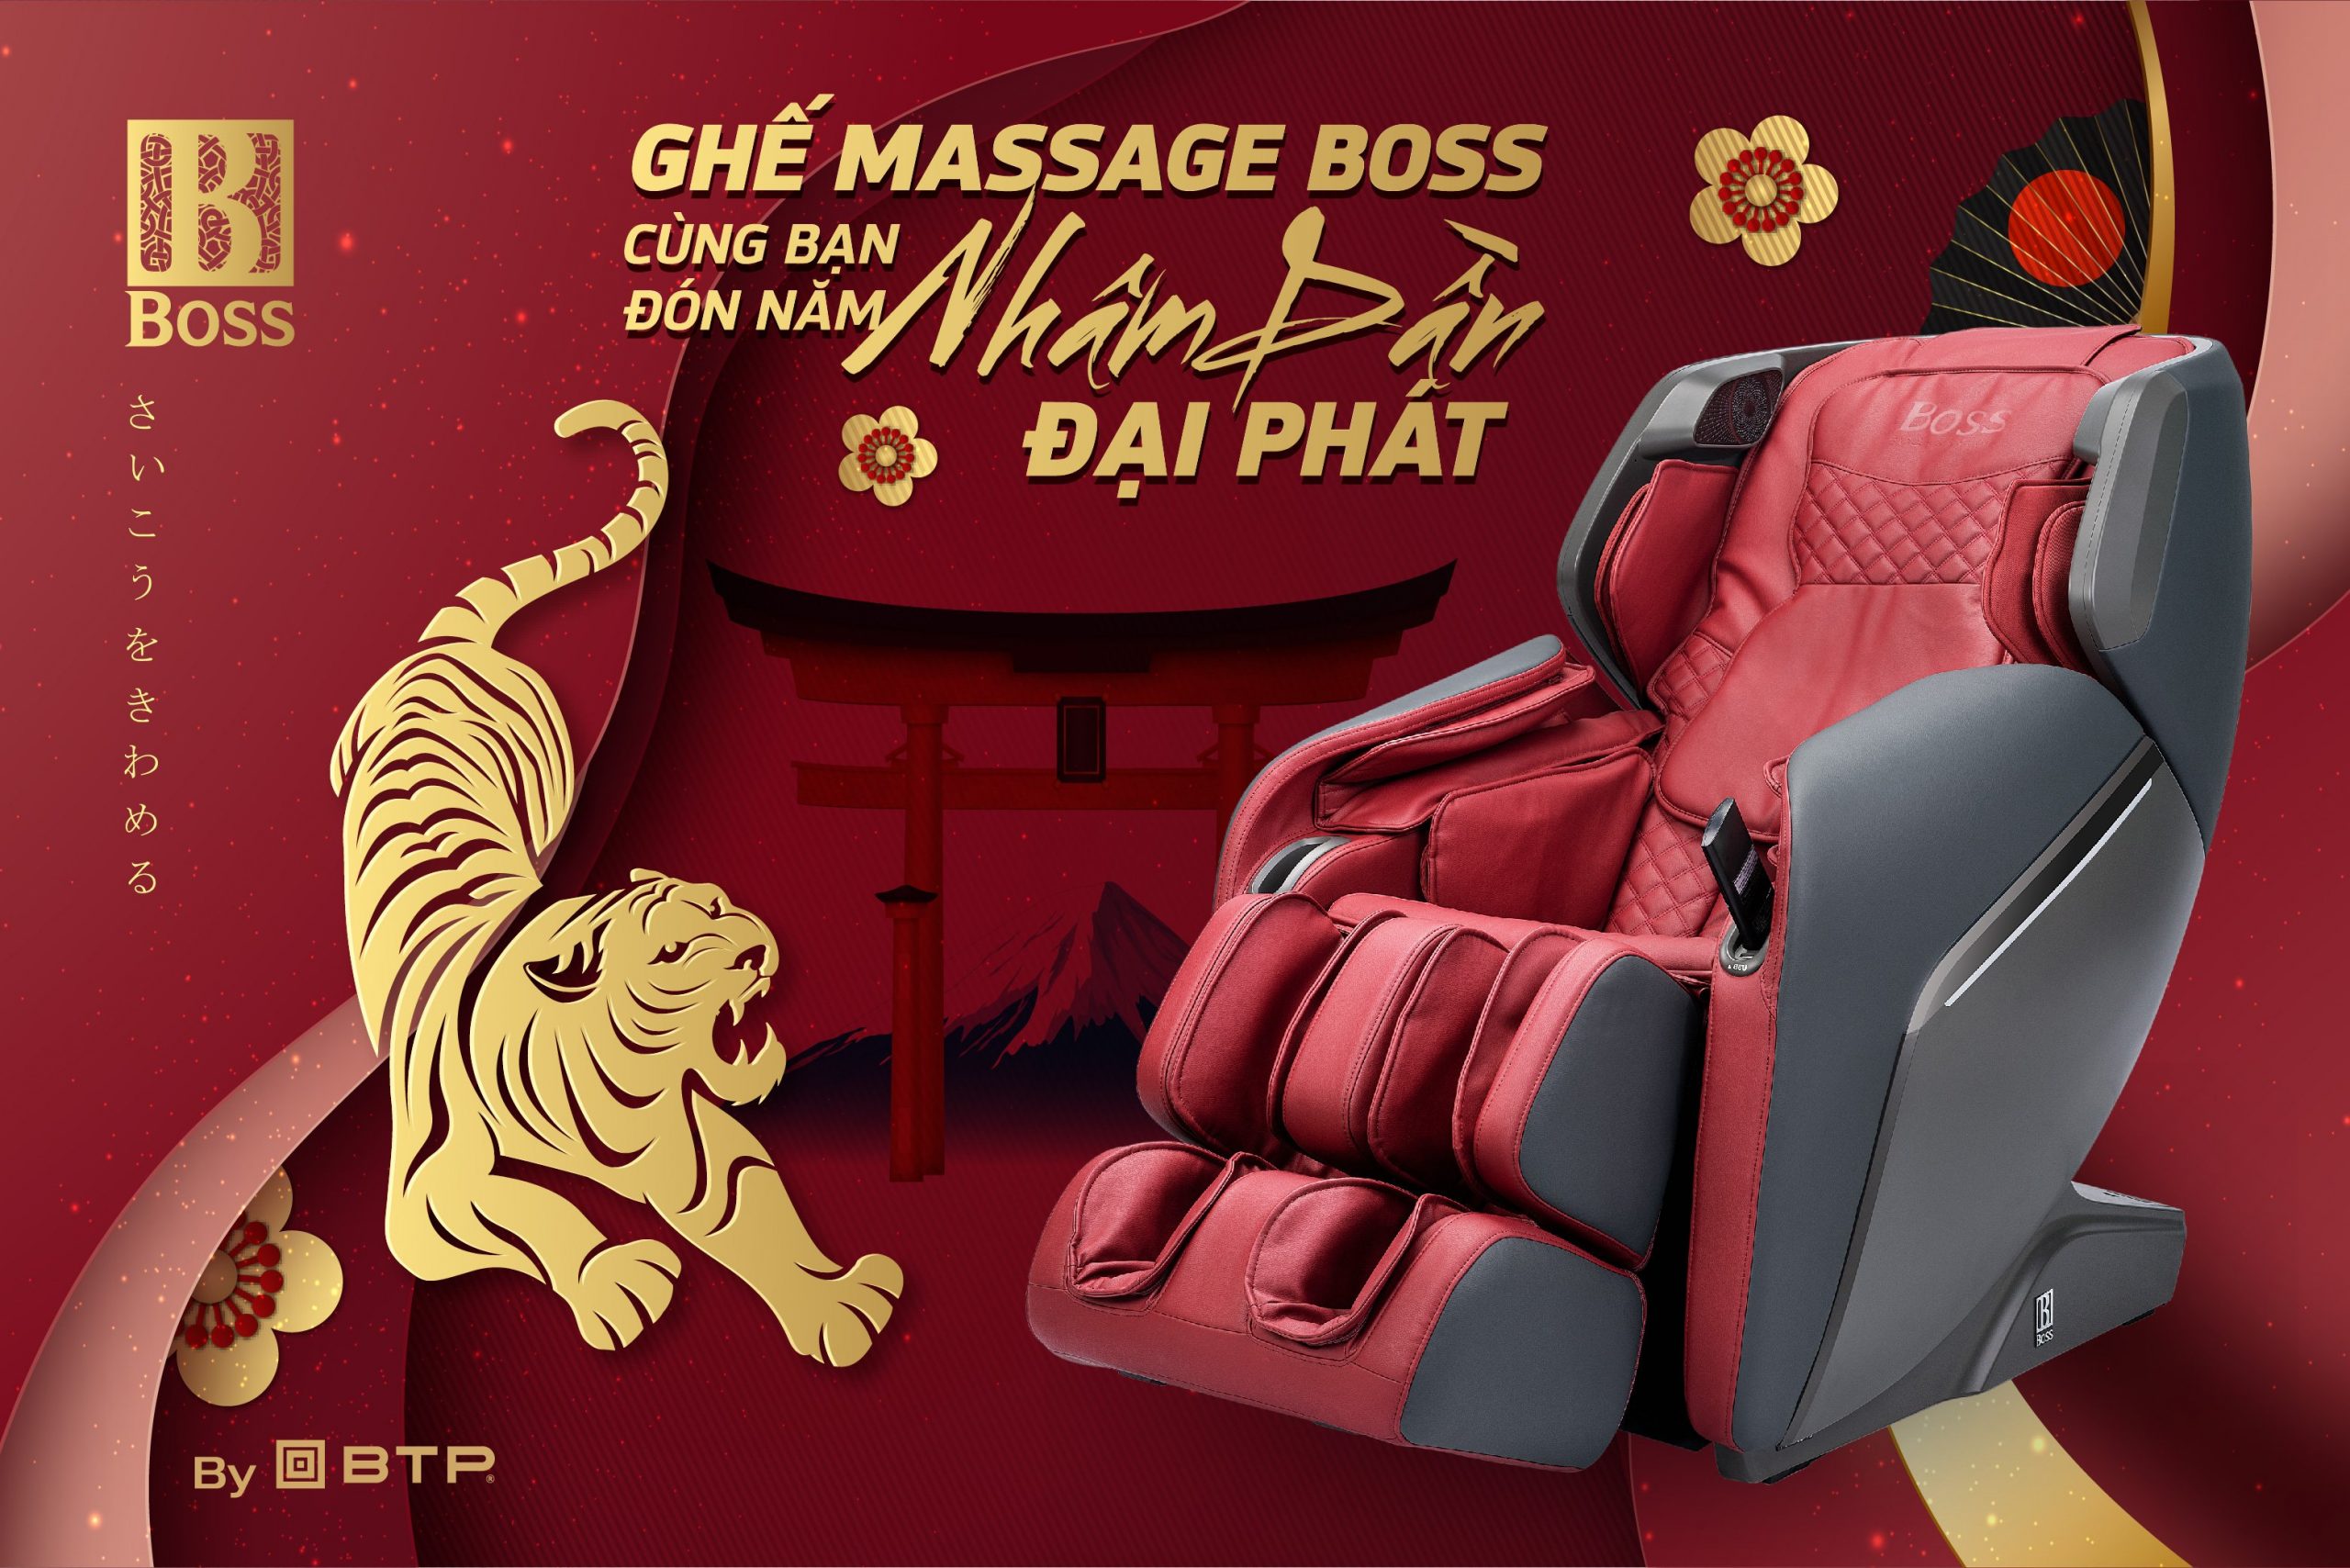 Ghế massage Boss cùng bạn đón năm Nhâm Dần đại phát